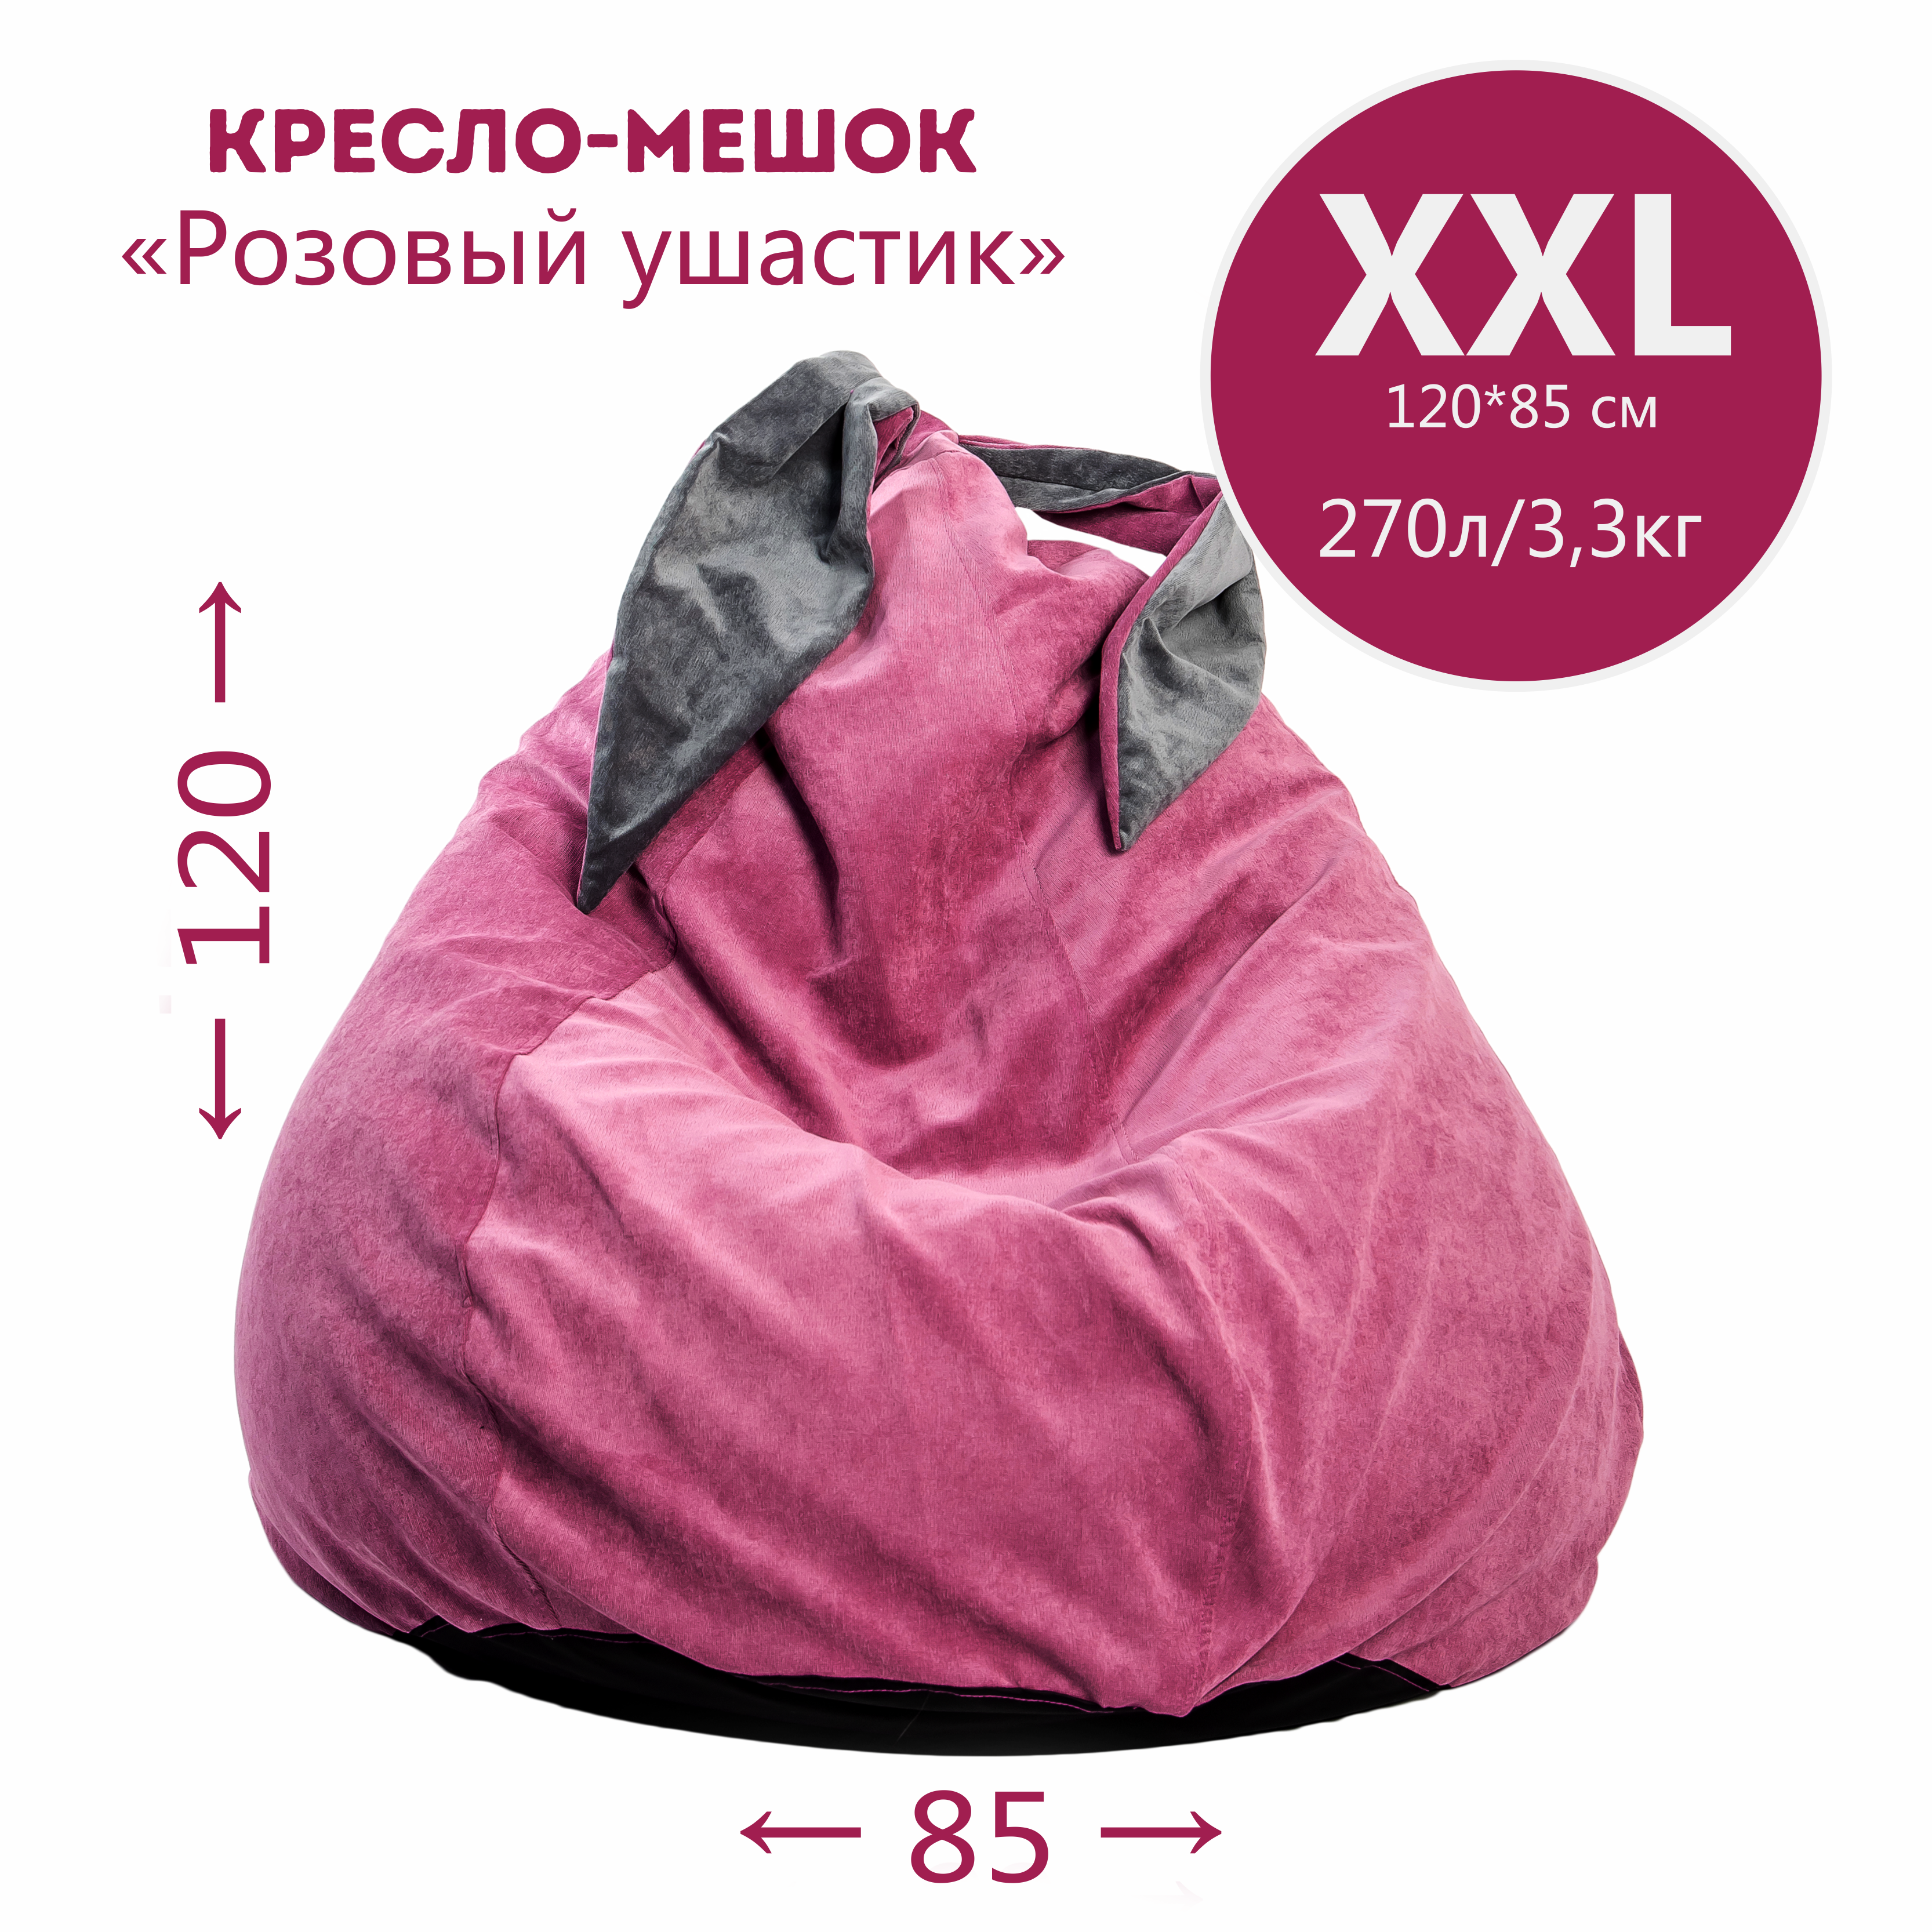 Кресло-мешок "Ушастик" для детей и взрослых, размер XXL - фотография № 3